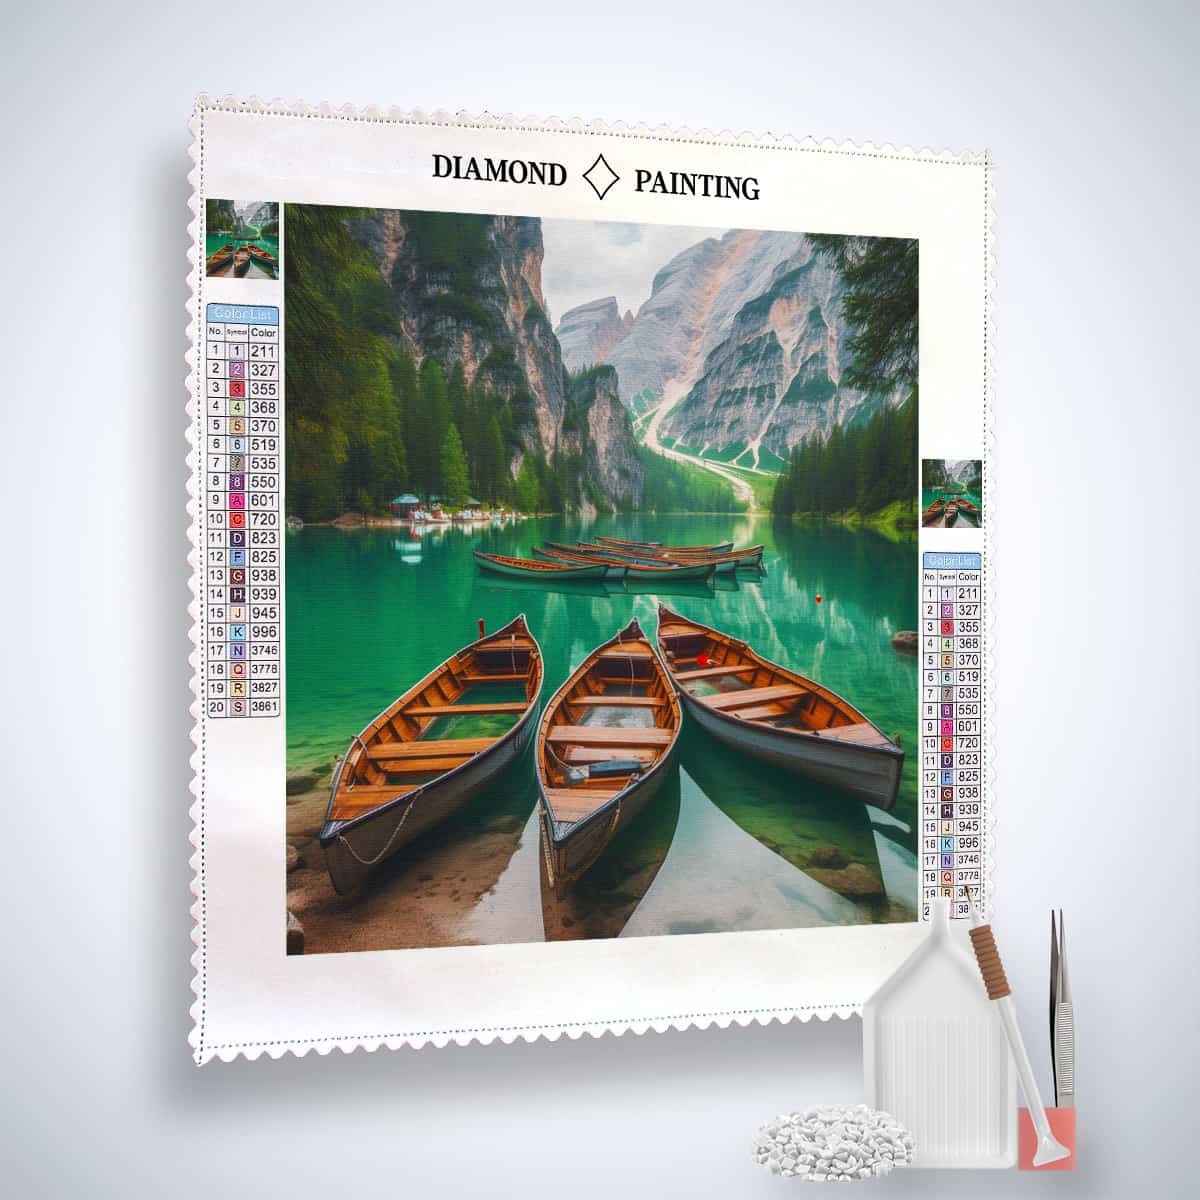 Diamond Painting - Boote und Bergepanorama - gedruckt in Ultra-HD - Boote, Landschaft, Neu eingetroffen, Quadratisch